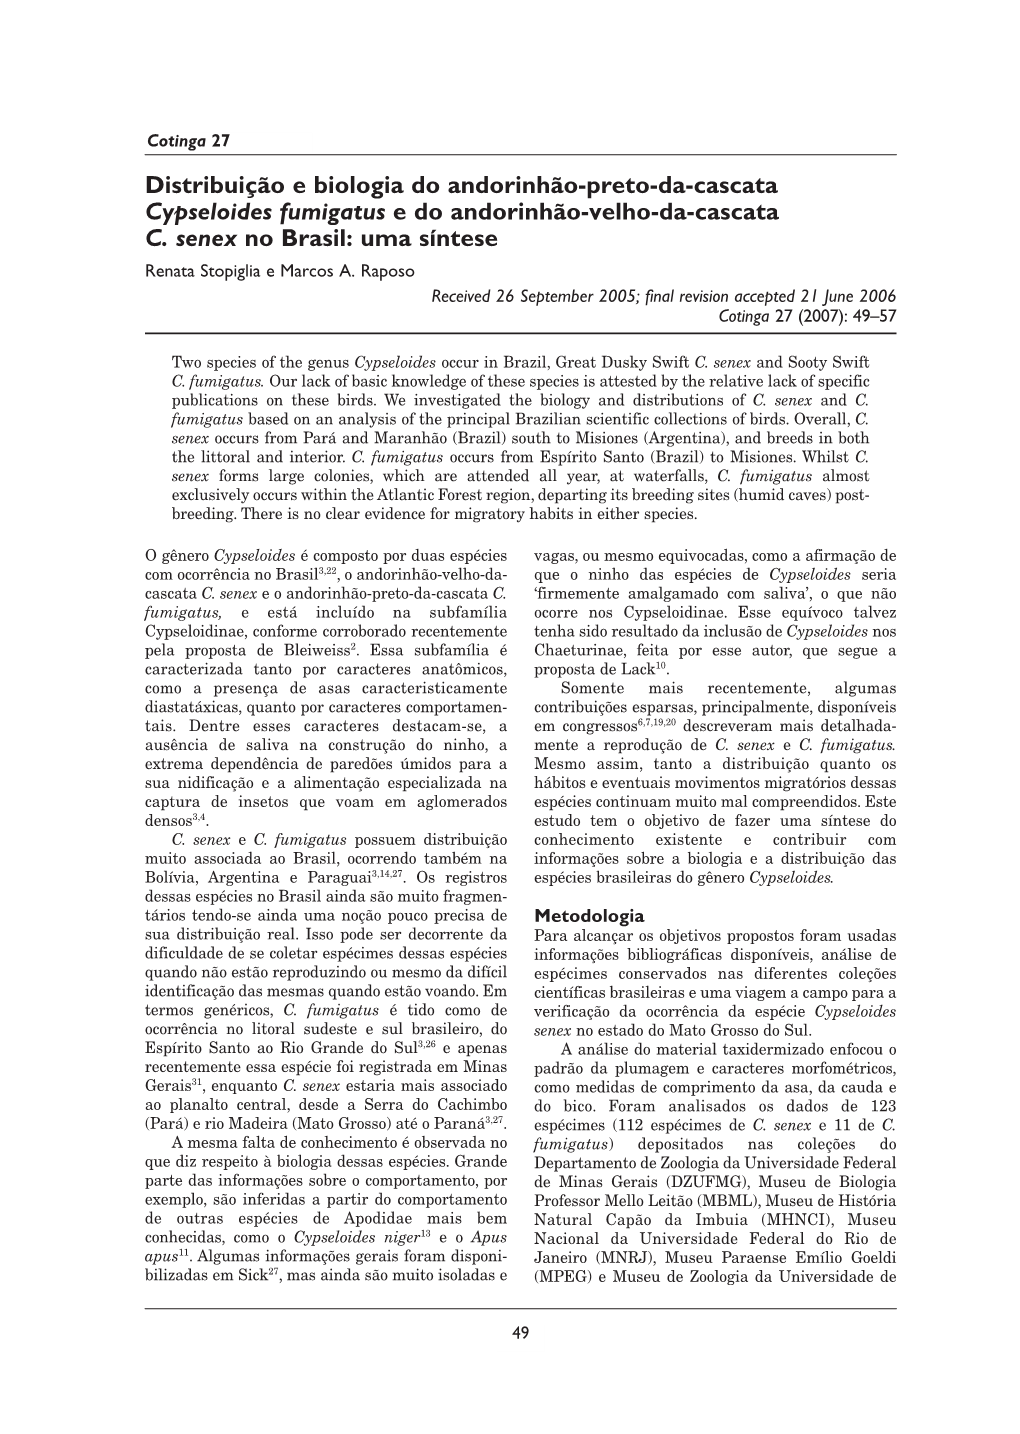 Distribuição E Biologia Do Andorinhão-Preto-Da-Cascata Cypseloides Fumigatus E Do Andorinhão-Velho-Da-Cascata C